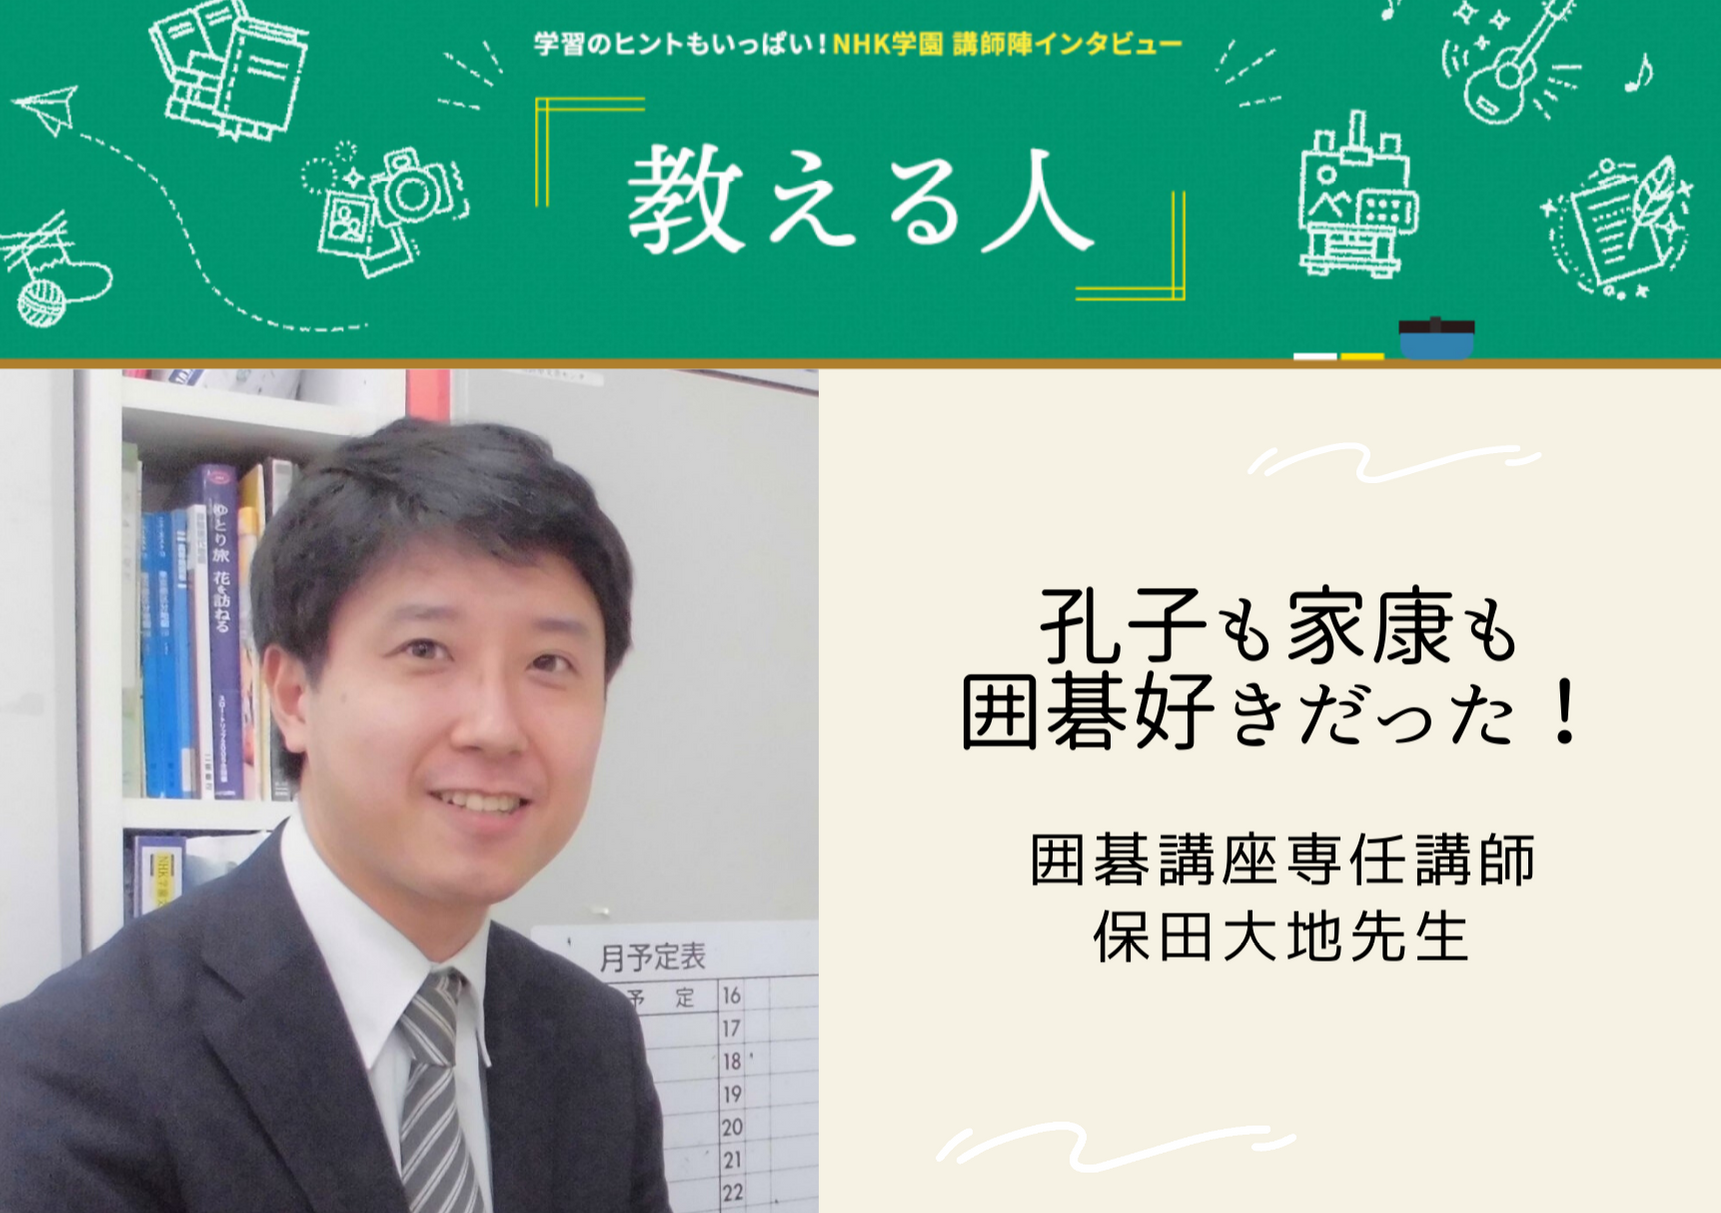 【コラム】NHK学園通信講座を支える先生にインタビュー!　教える人